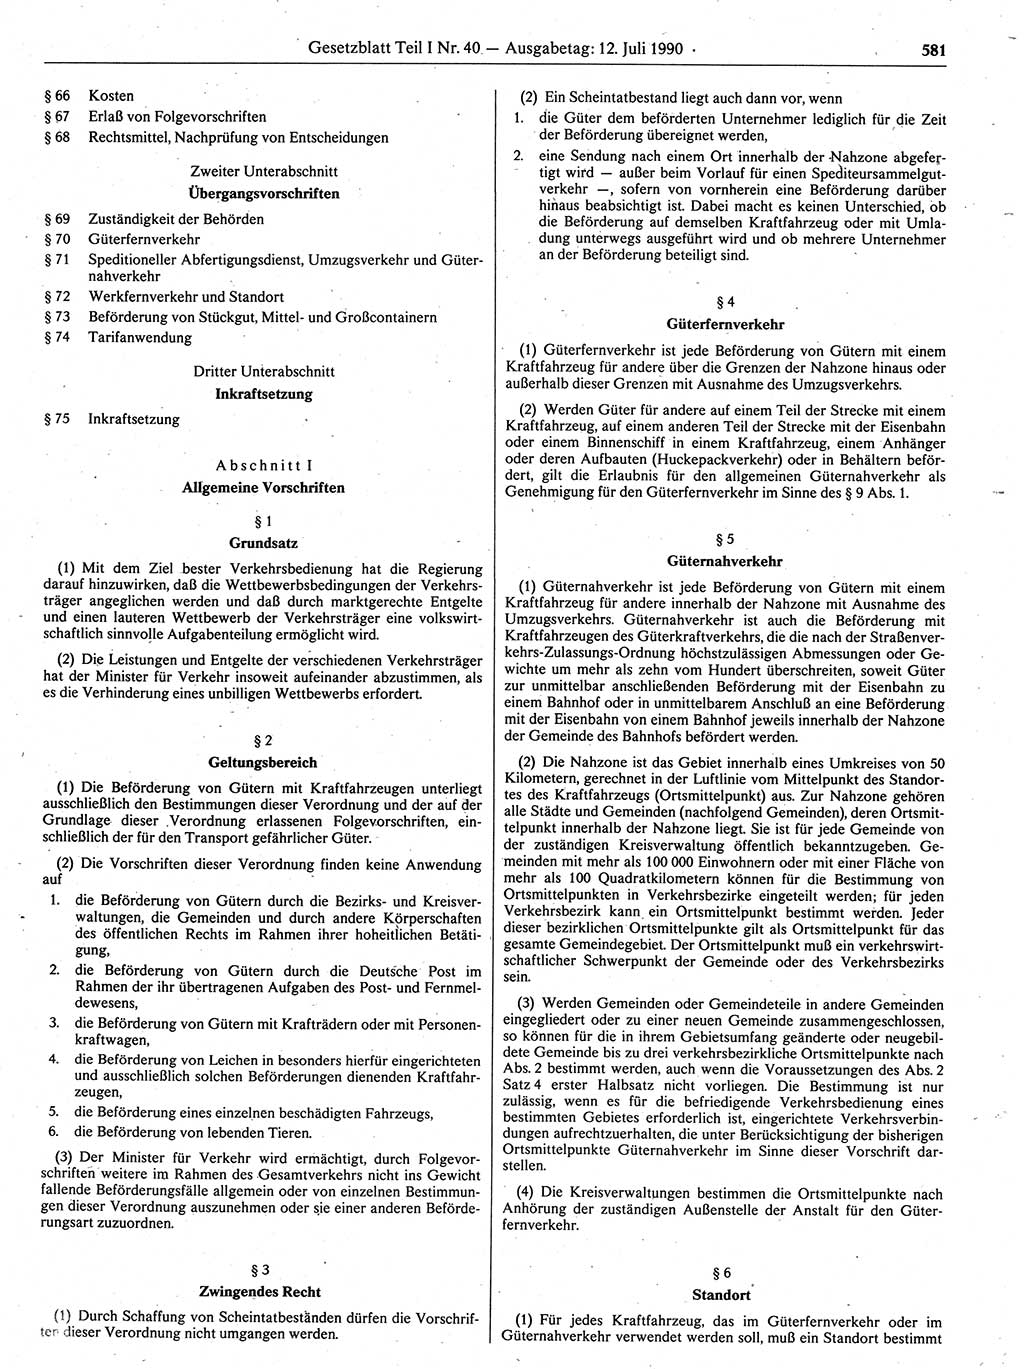 Gesetzblatt (GBl.) der Deutschen Demokratischen Republik (DDR) Teil Ⅰ 1990, Seite 581 (GBl. DDR Ⅰ 1990, S. 581)